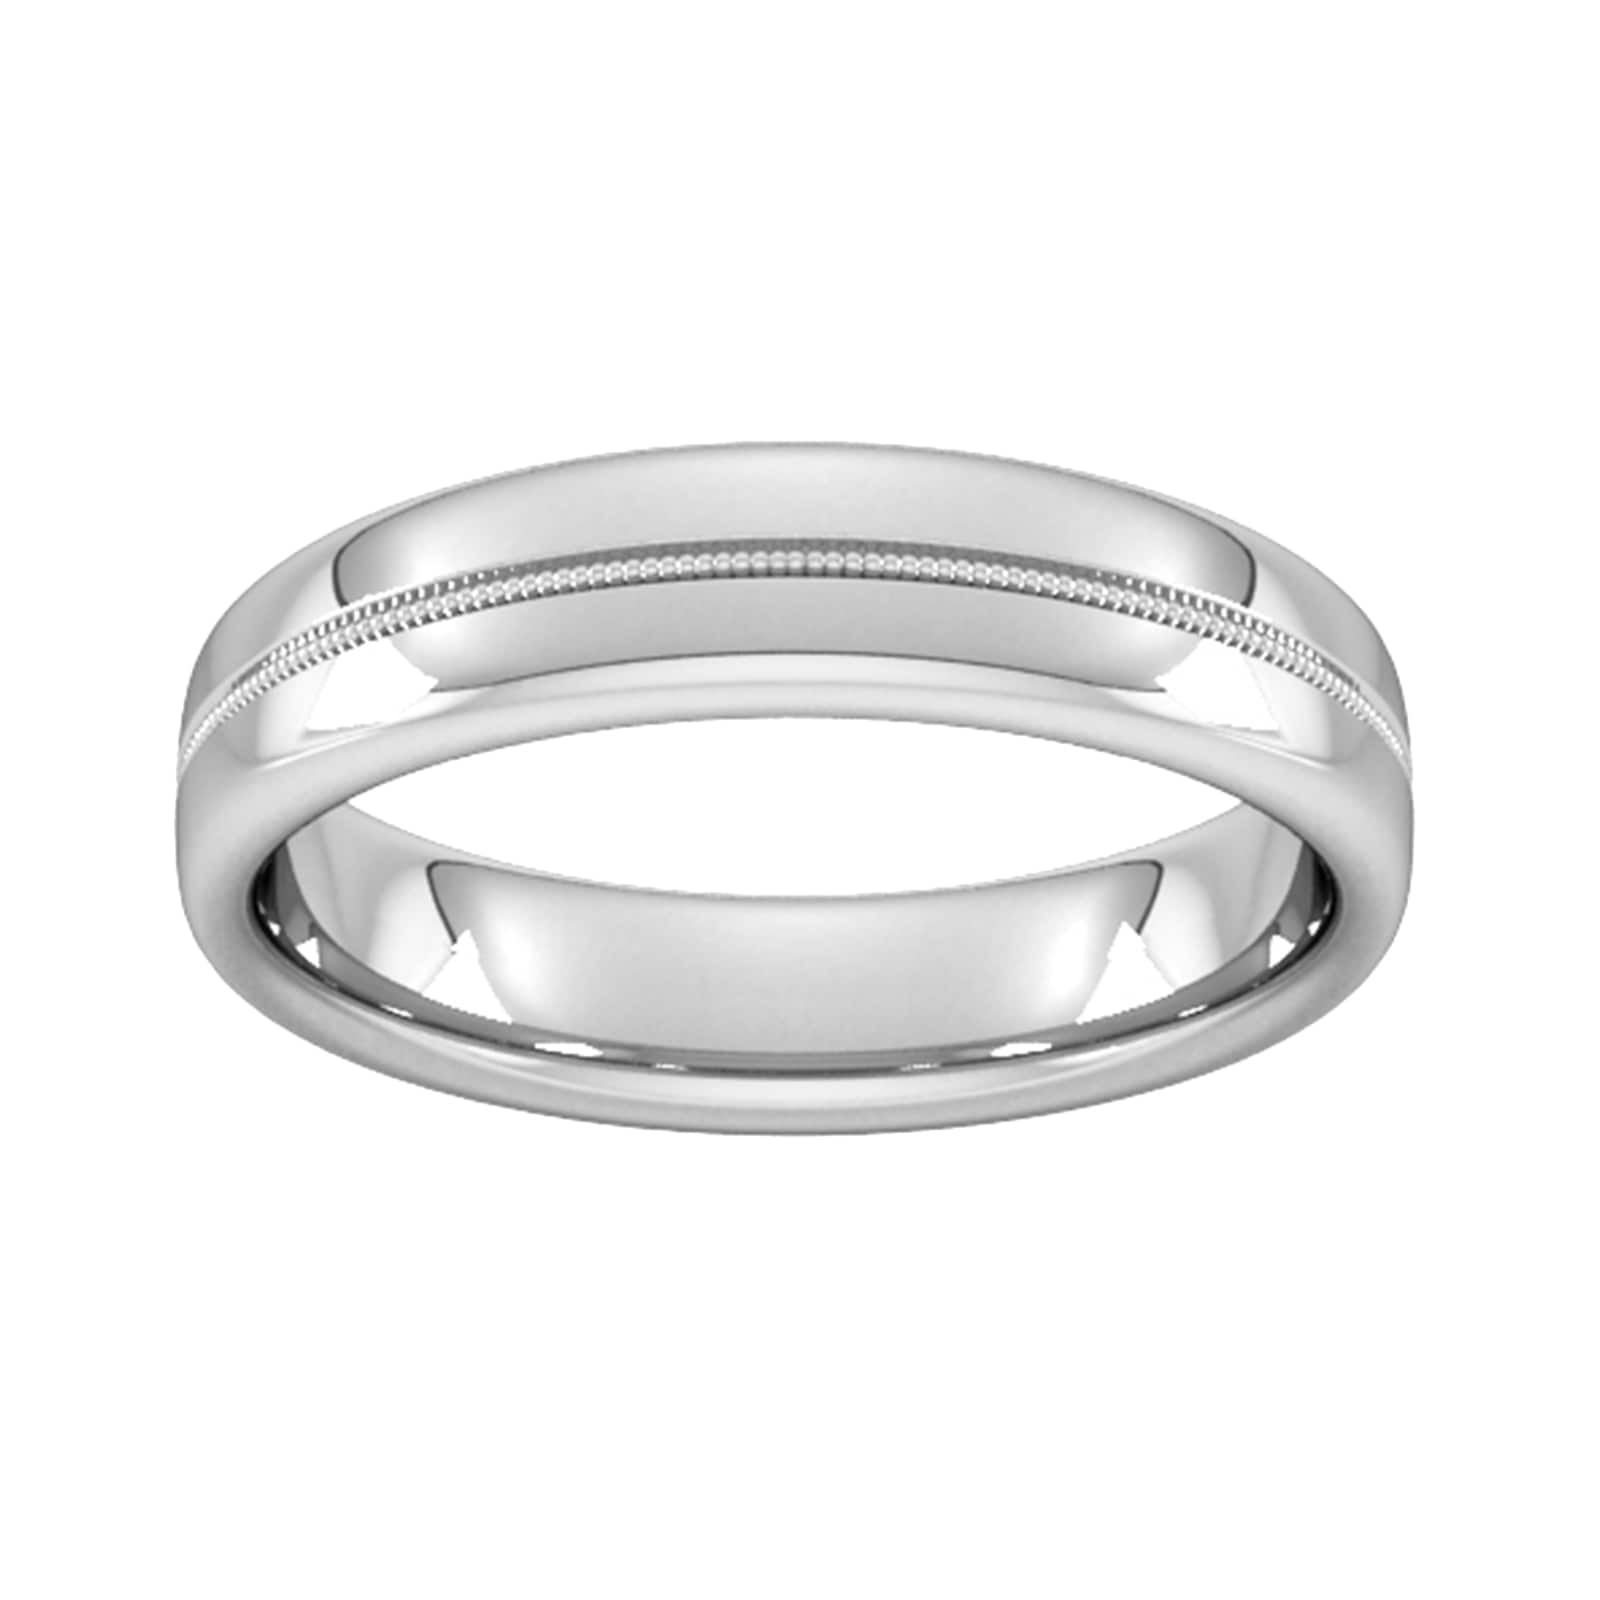 5mm Slight Court Standard Milgrain Centre Wedding Ring In 18 Carat White Gold - Ring Size H